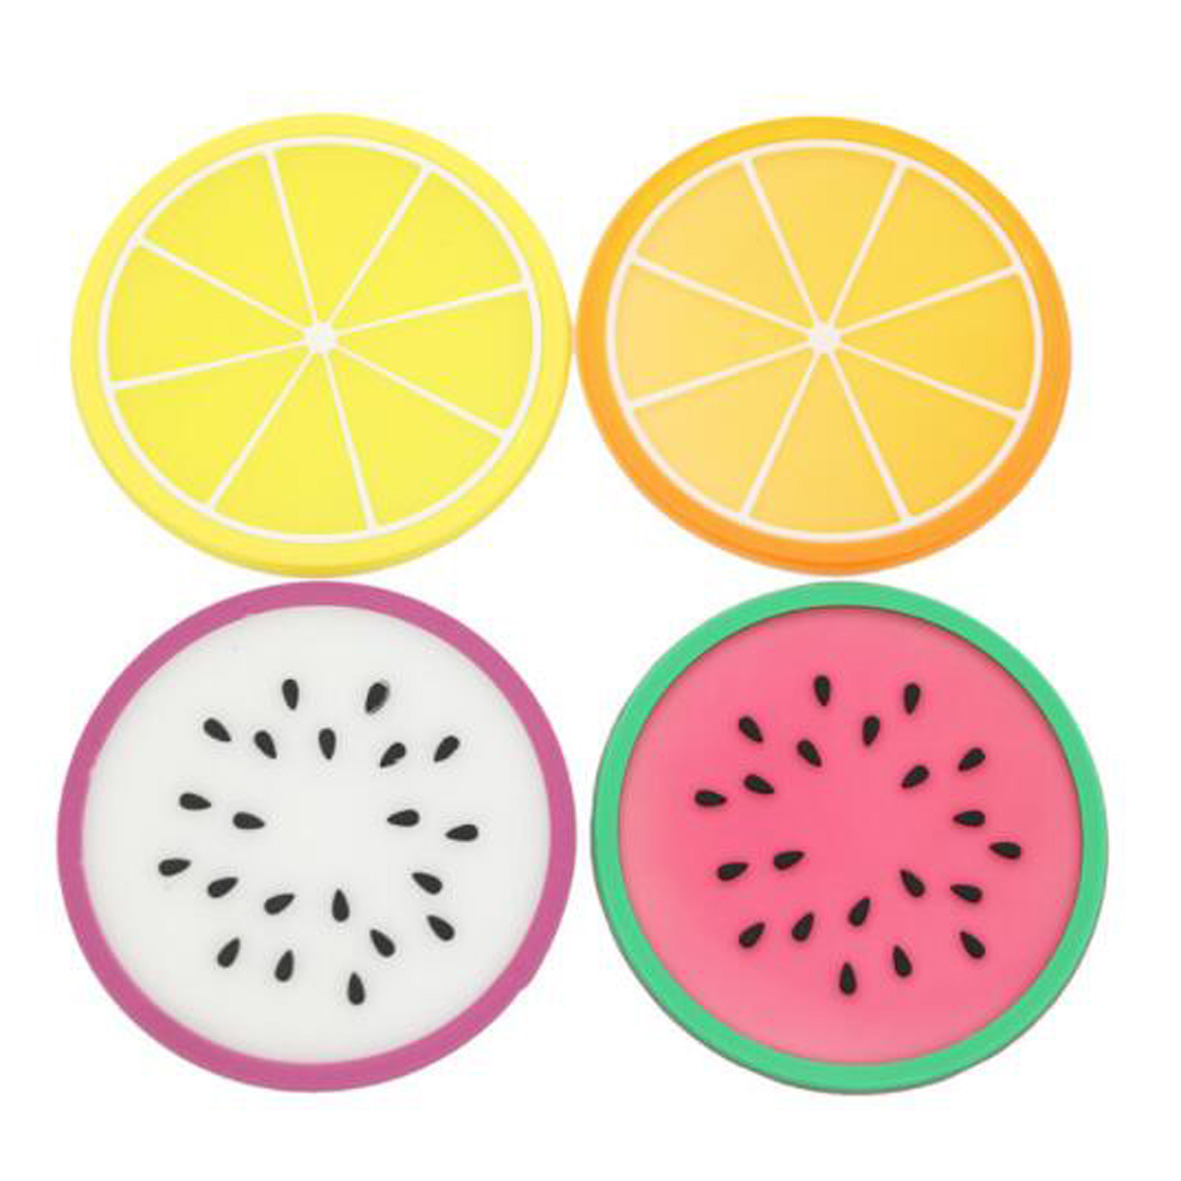 GL-ELY1145 Waterproof Fruit-shaped Coasters